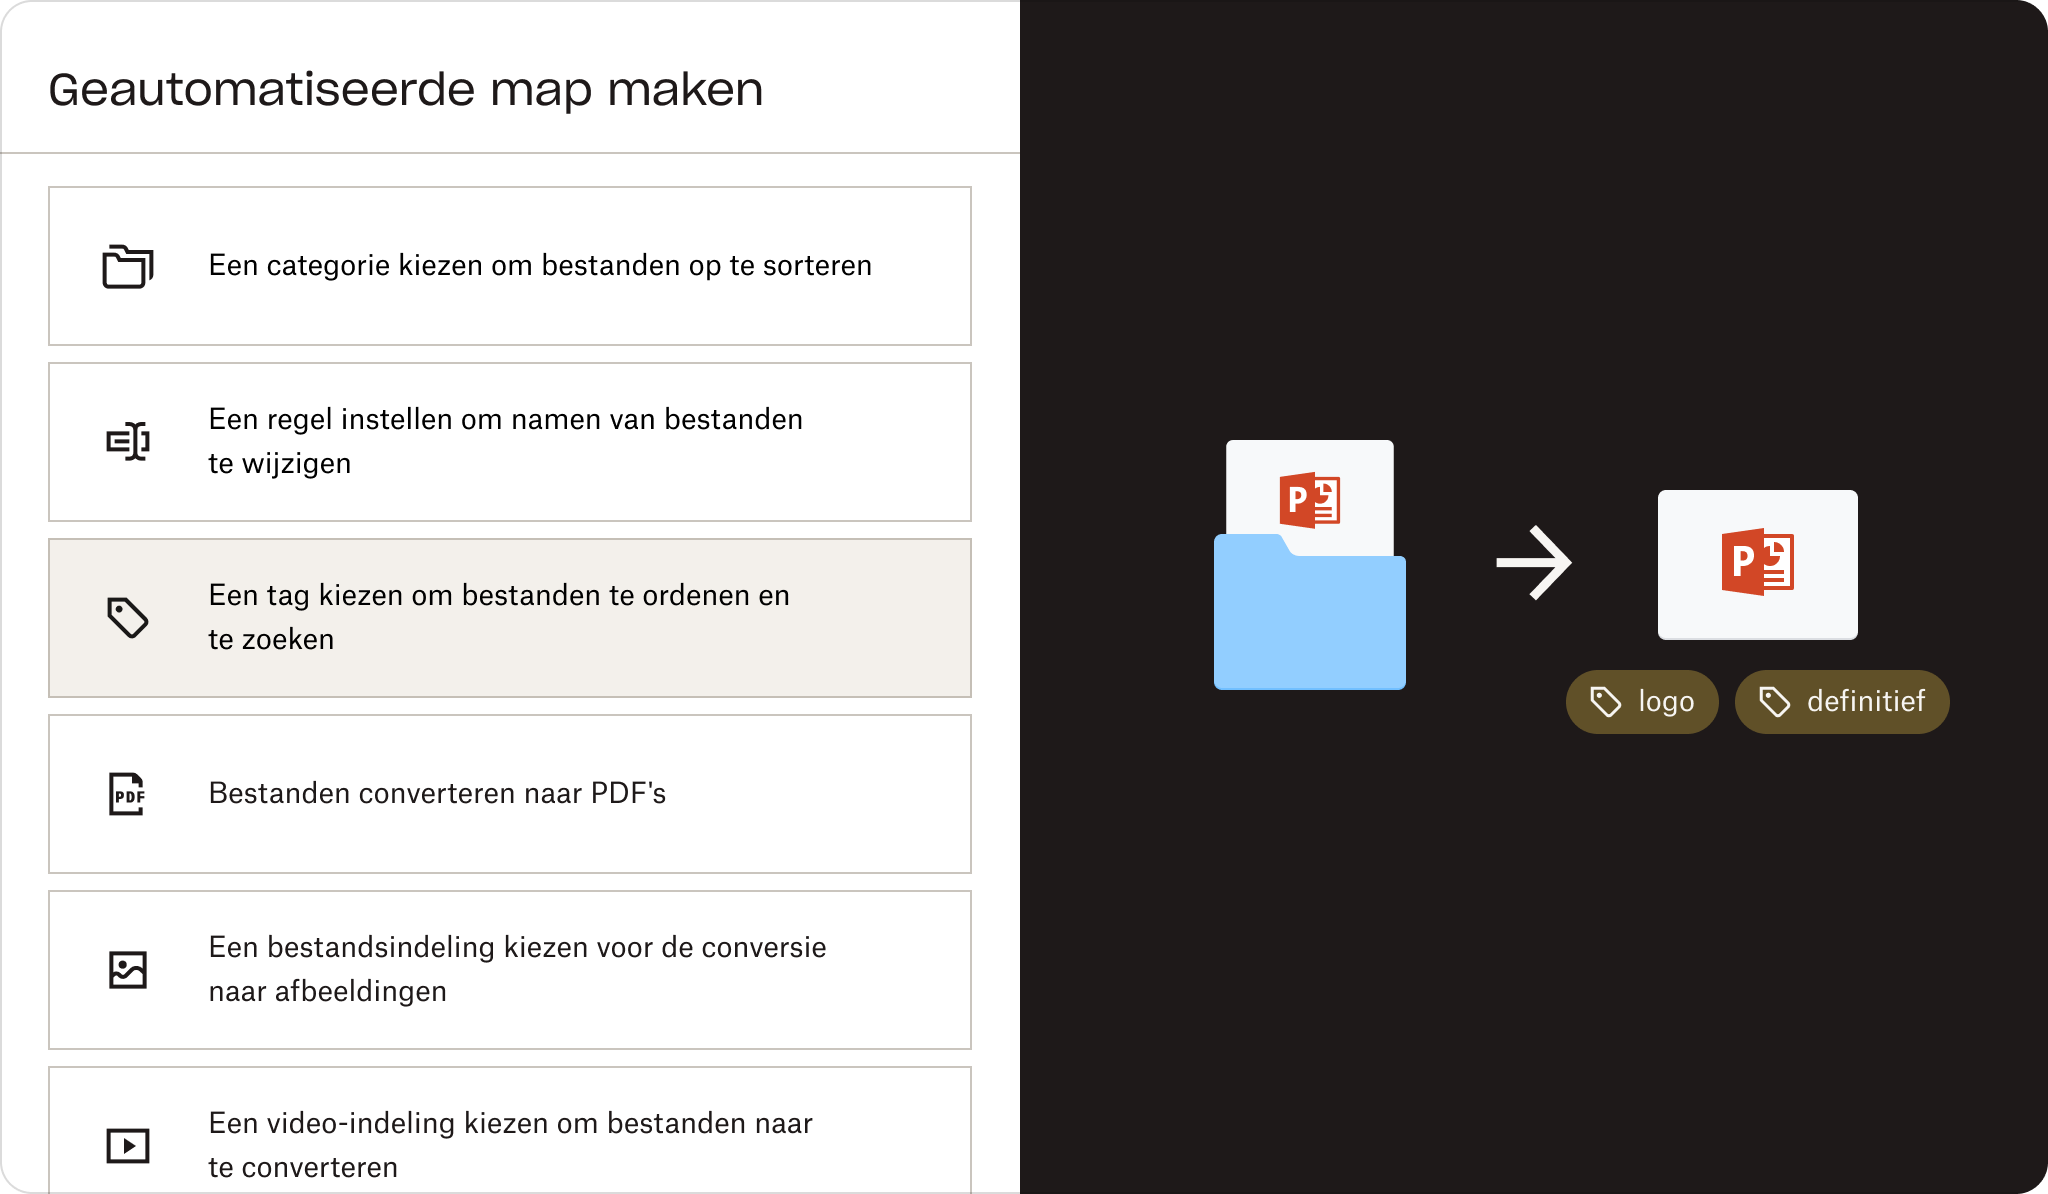 Stappen om een geautomatiseerde map te maken met een afbeelding van een map en een bestand